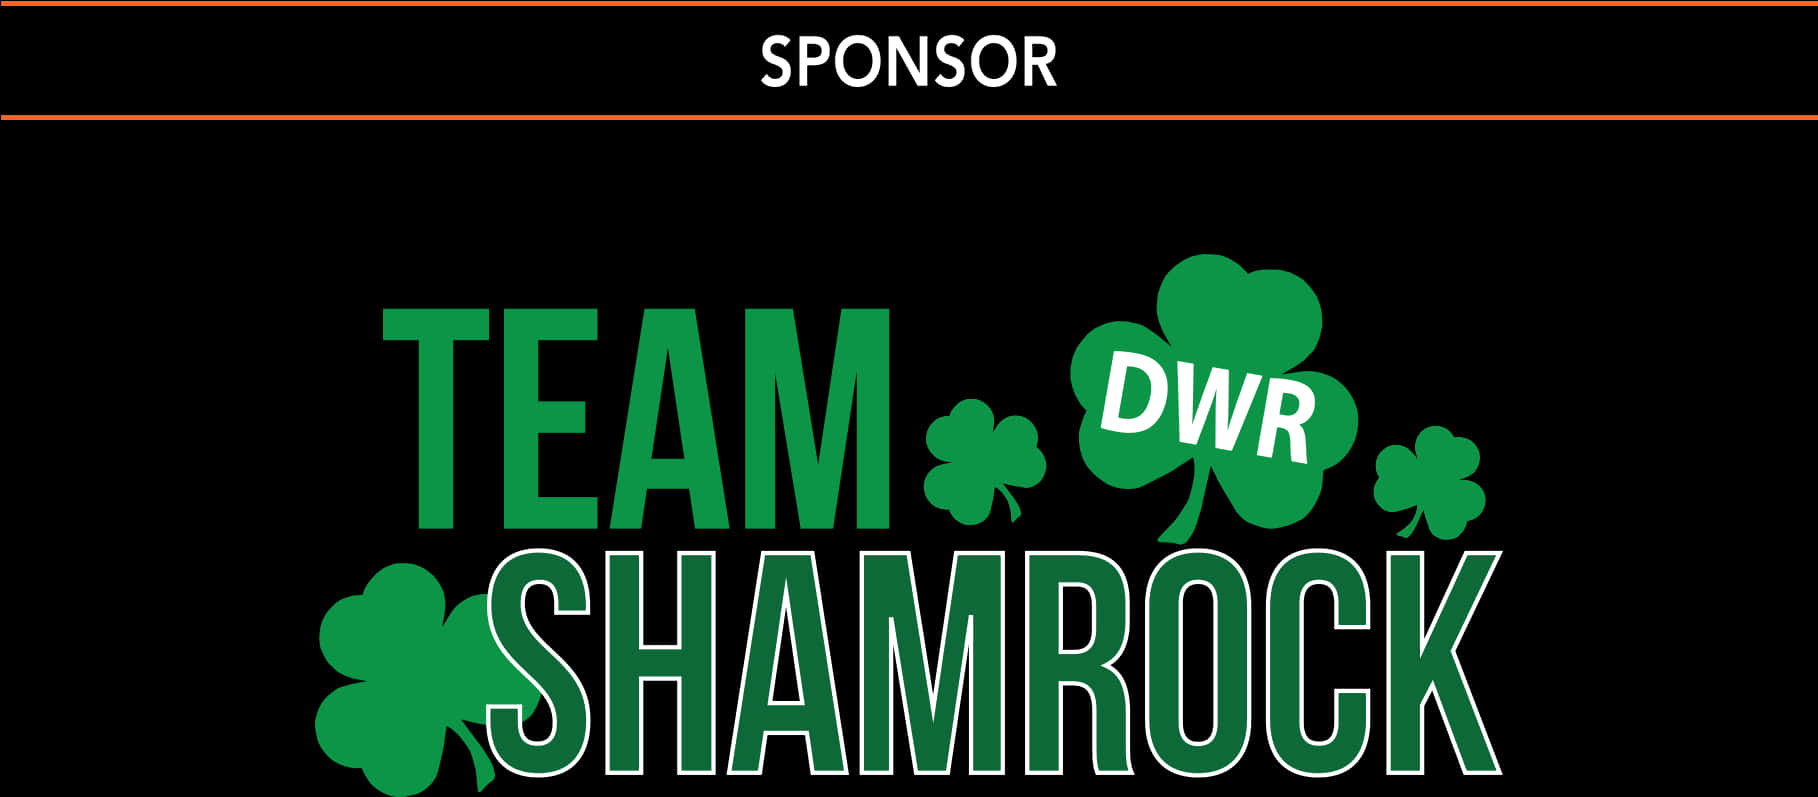 Team Shamrock Sponsor Banner PNG image